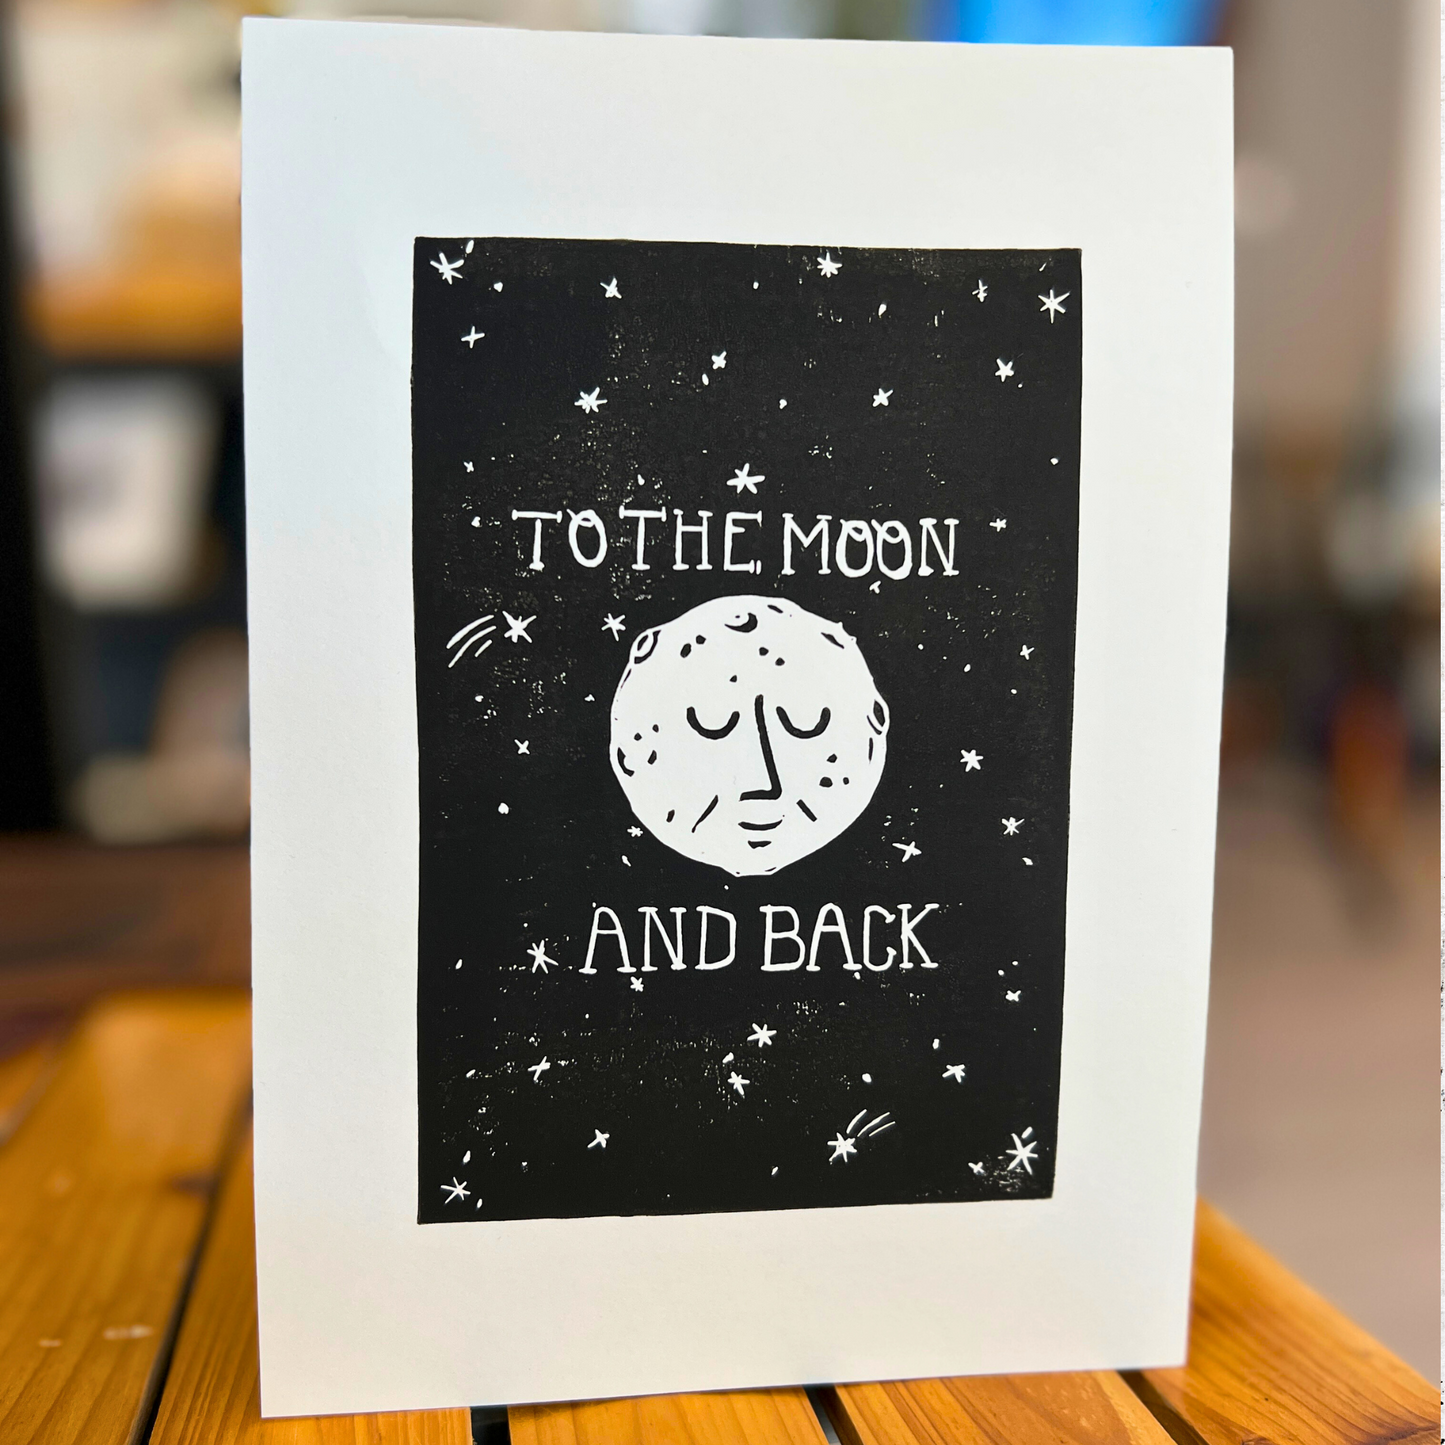 Bild "Ticket To The Moon" Linolschnitt